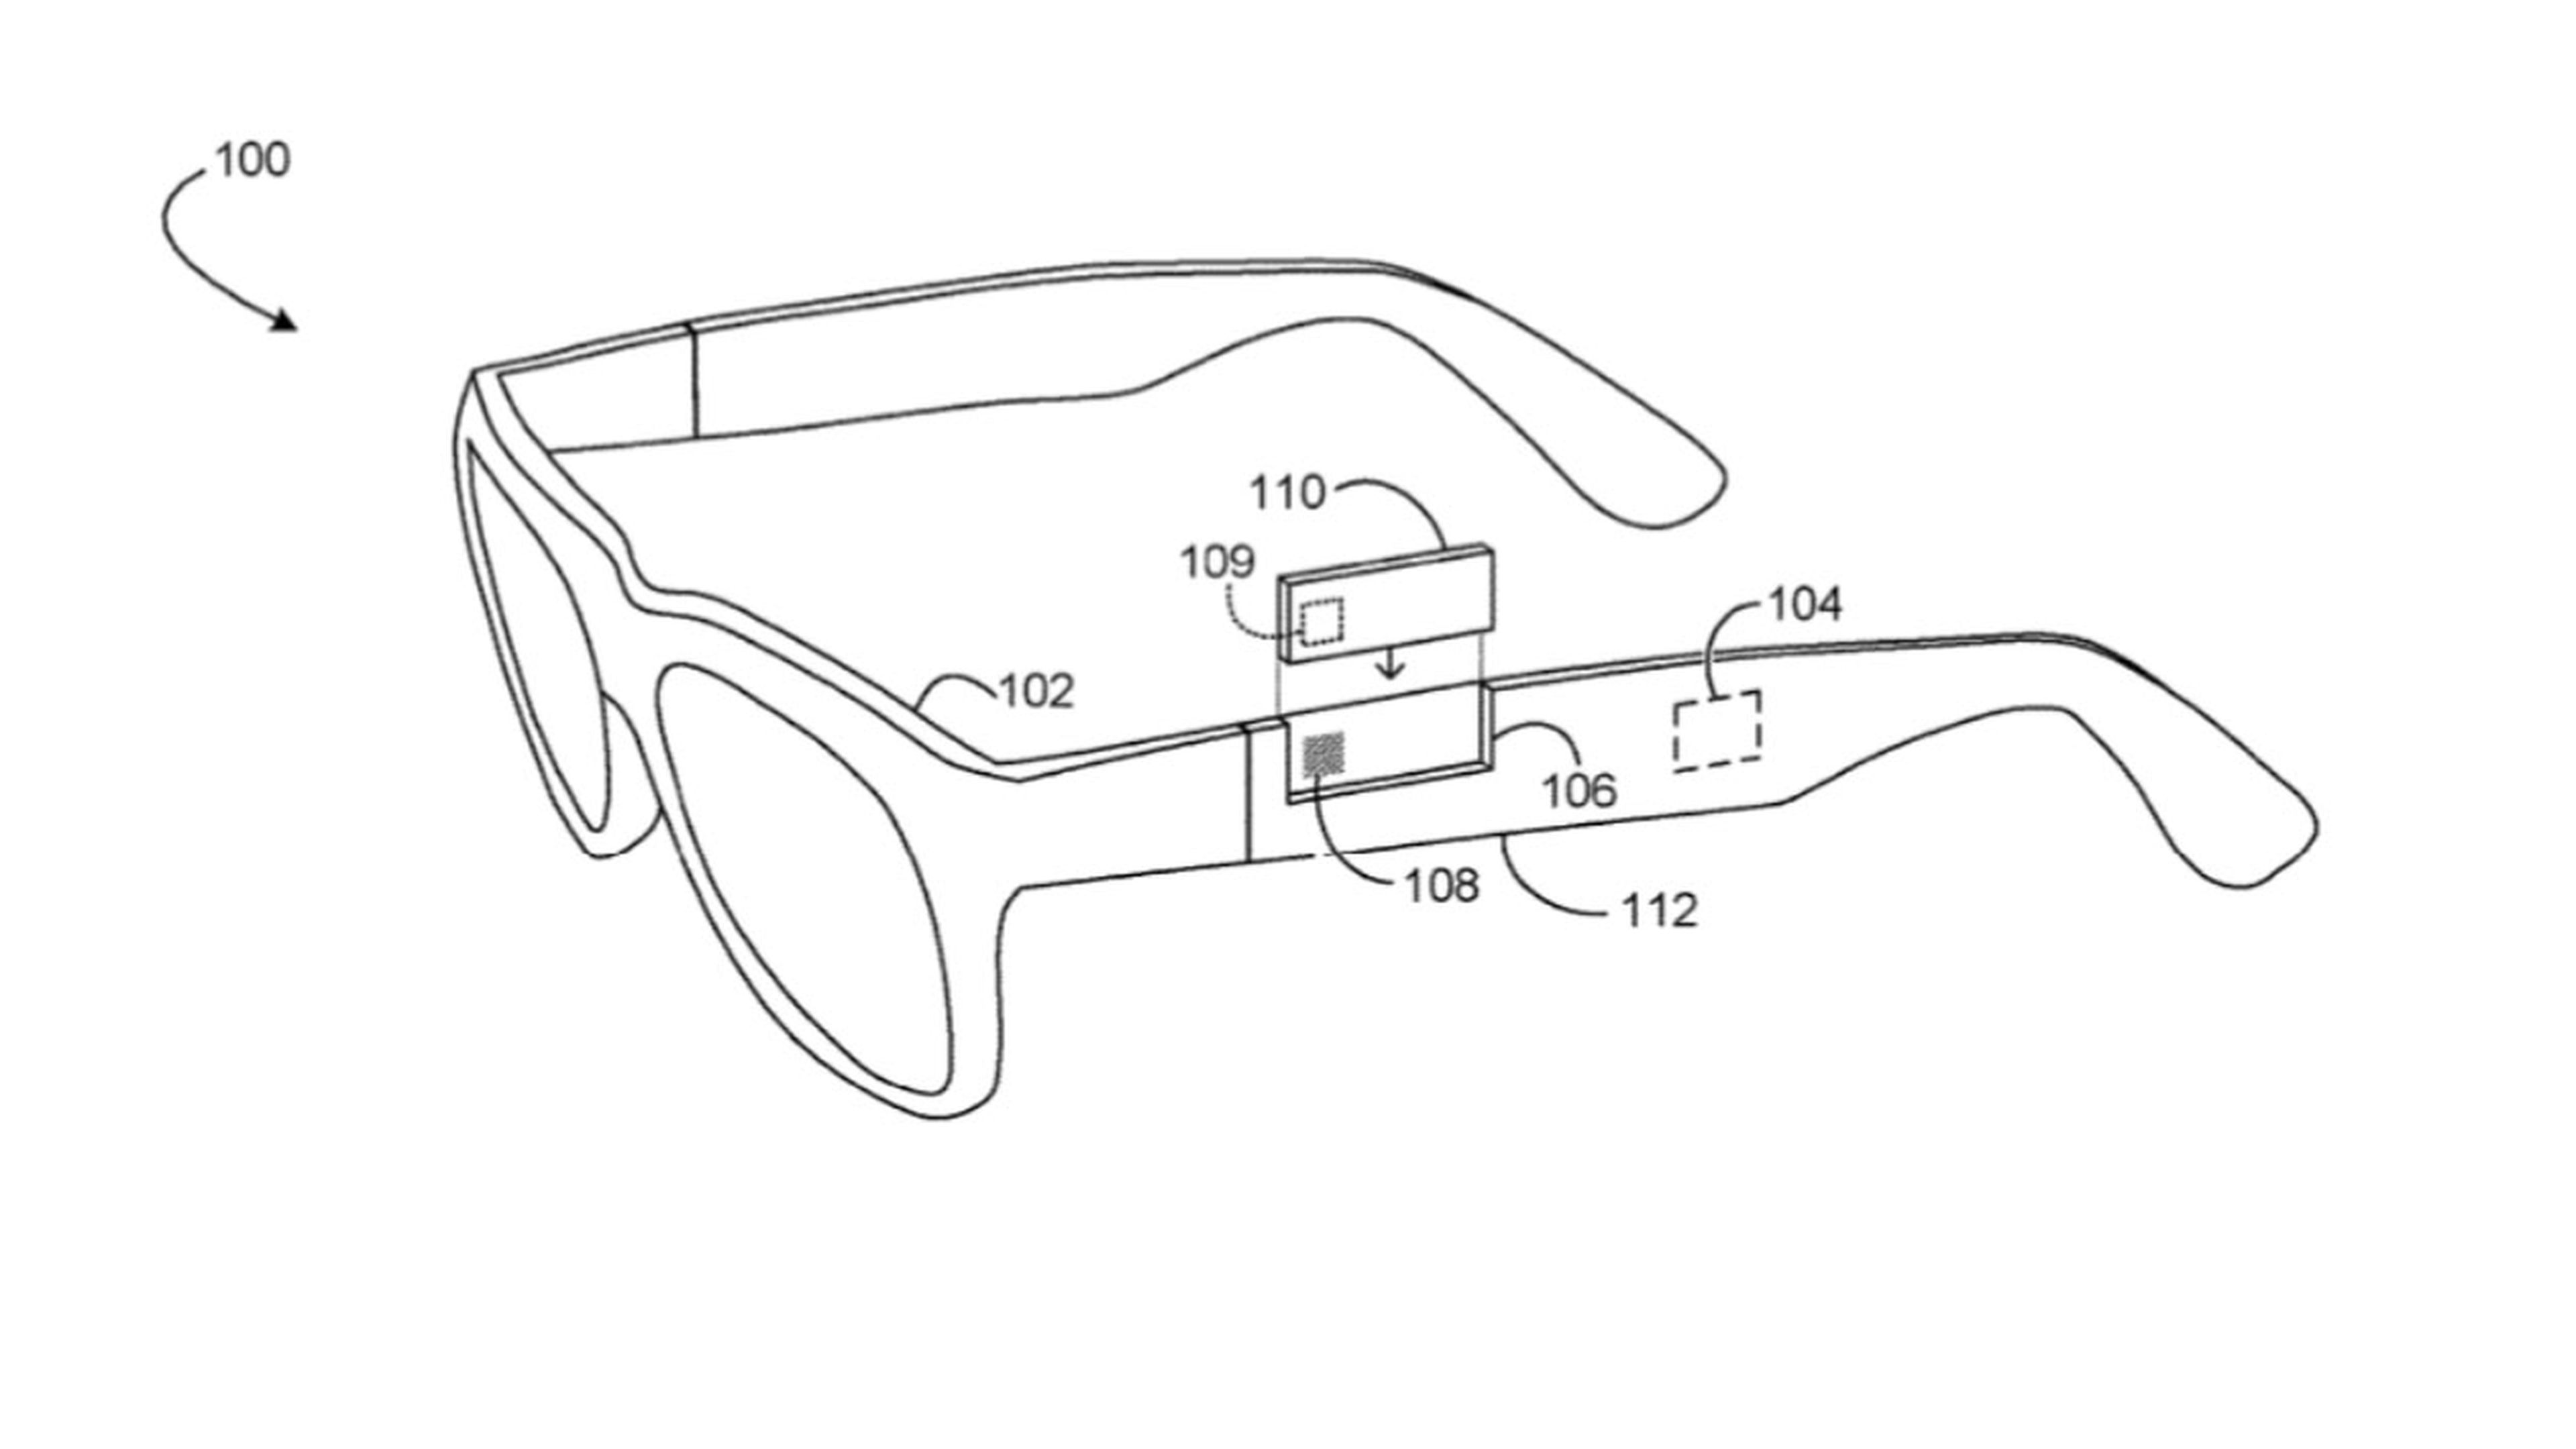 Microsoft piensa en unas gafas de realidad aumentada con un diseño modular y batería intercambiable